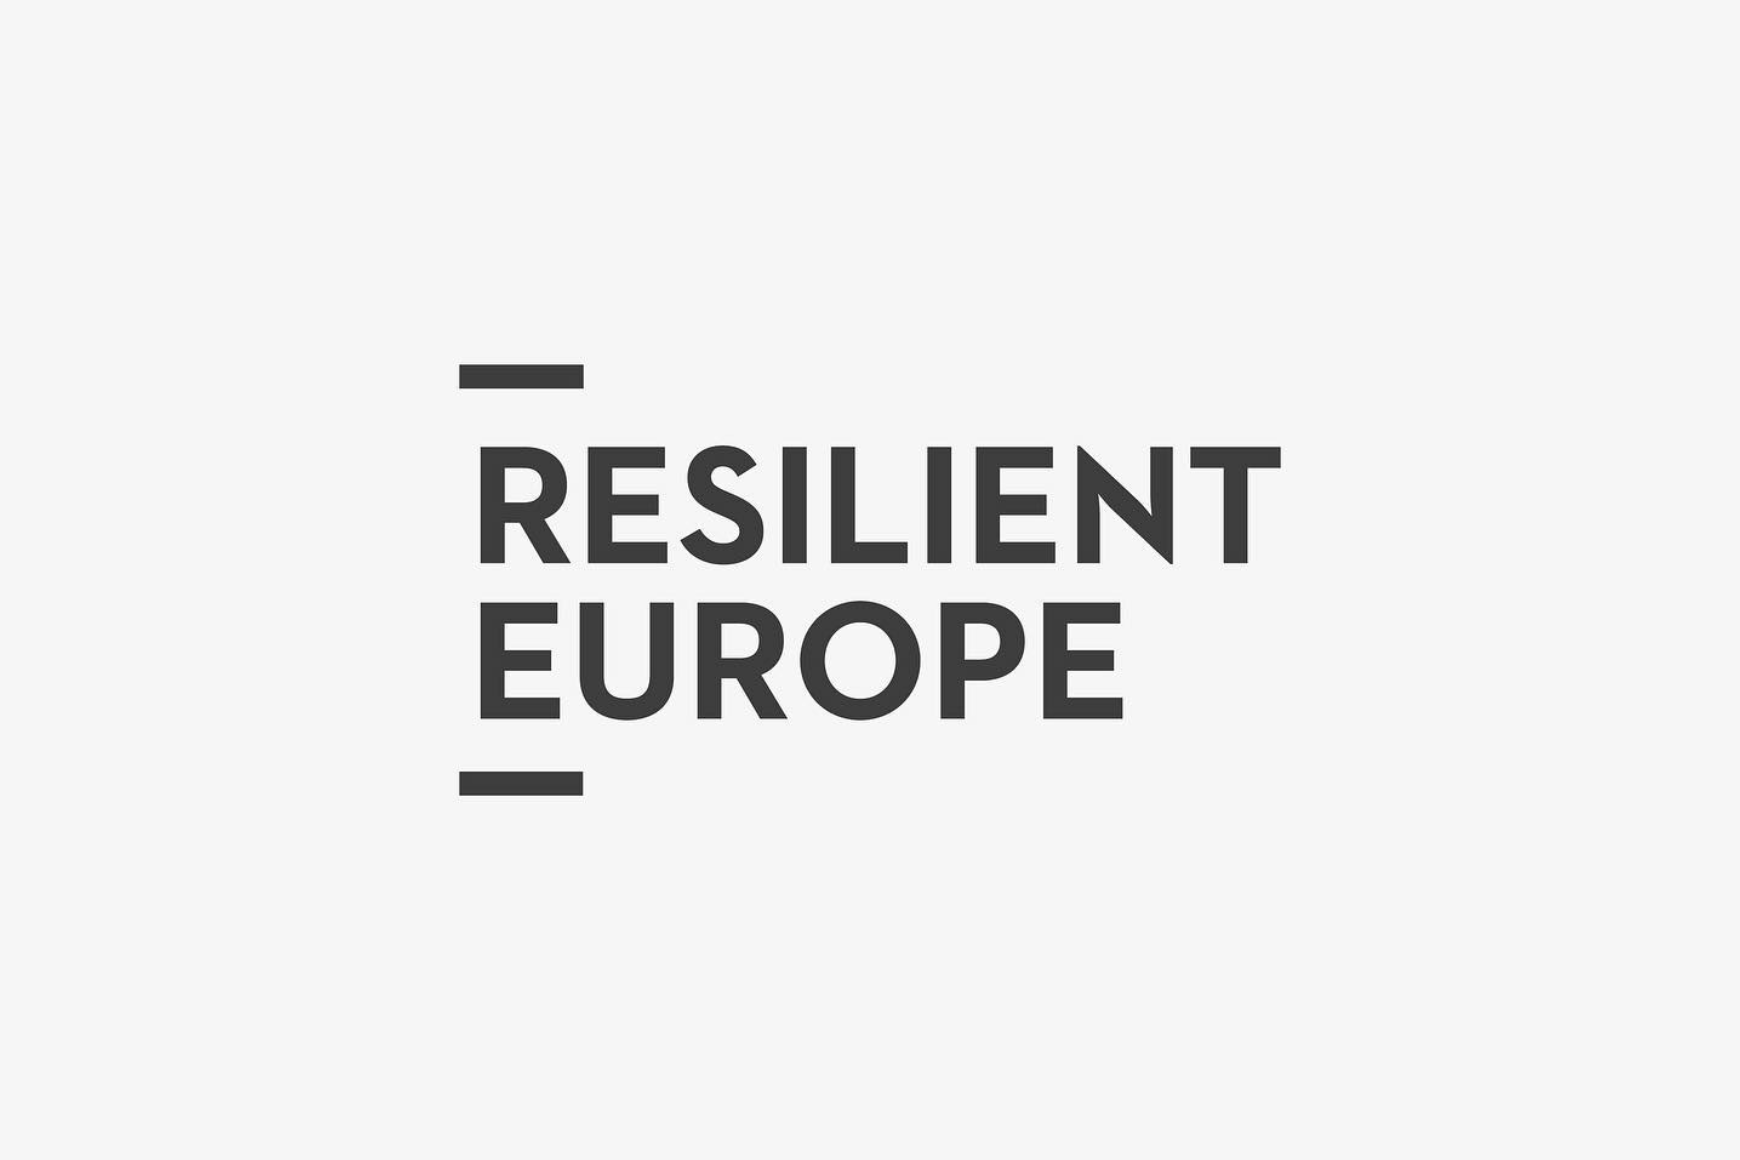 Resilient Europe Schriftzug Logokonzept.